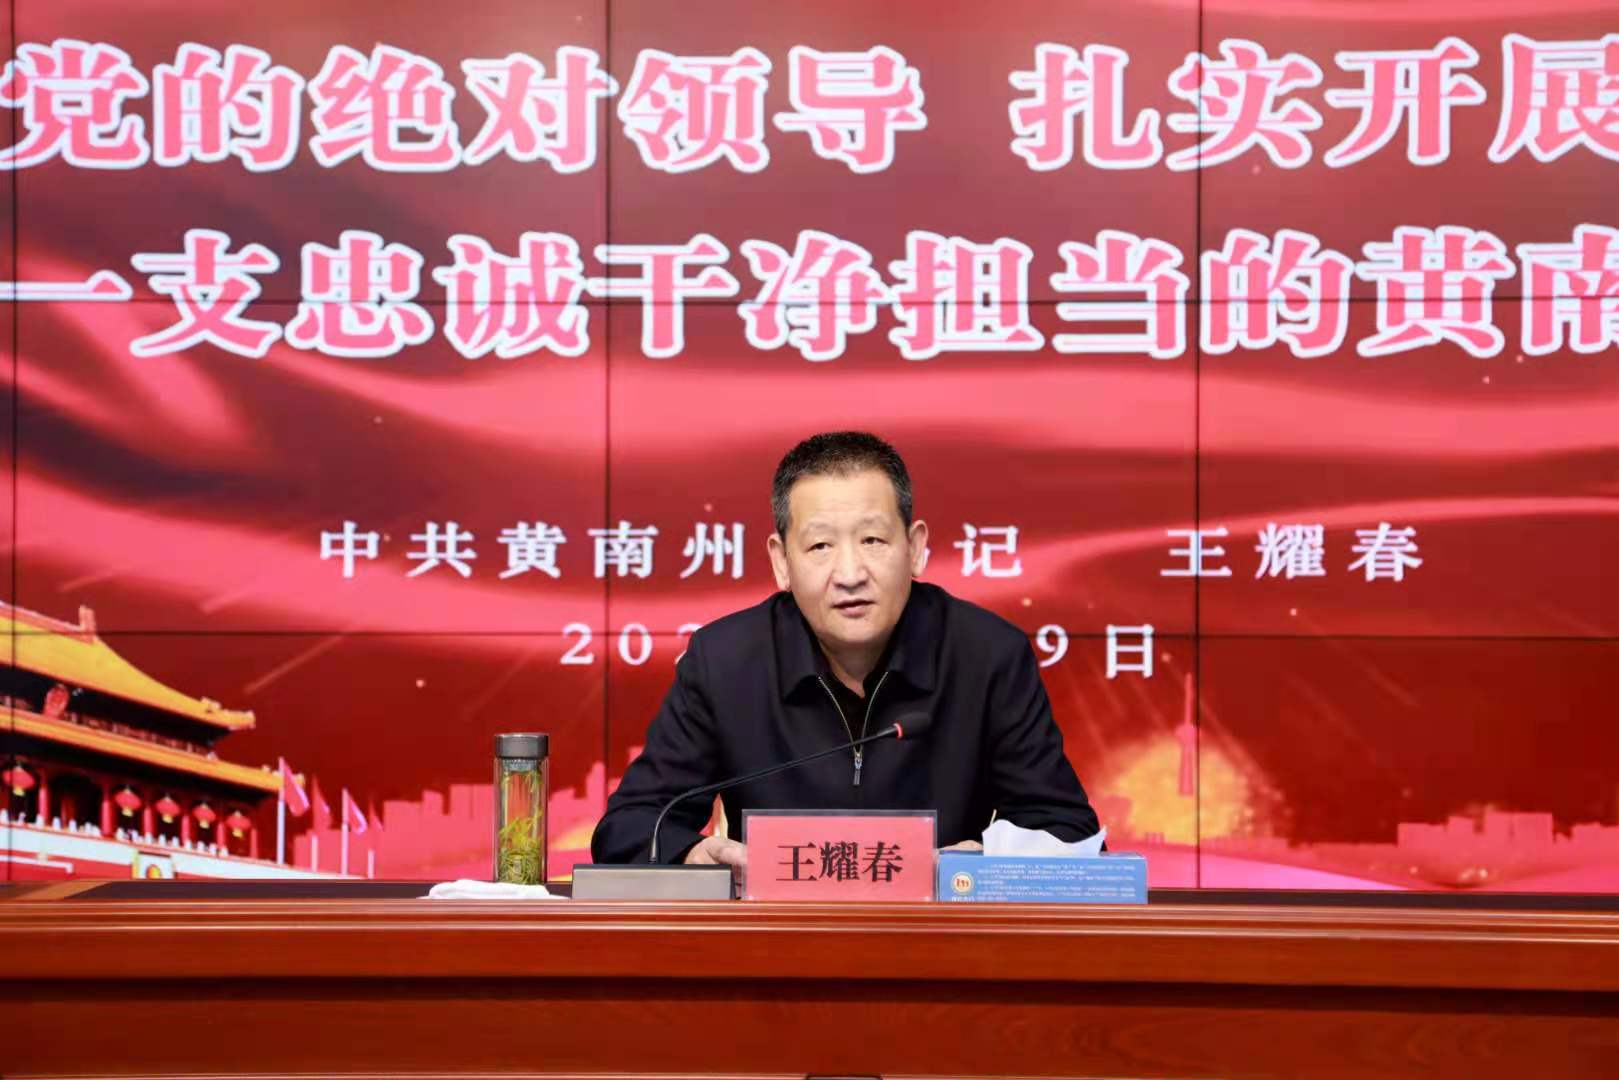 4月9日,黄南州委书记王耀春以"坚持党的绝对领导 扎实开展教育整顿